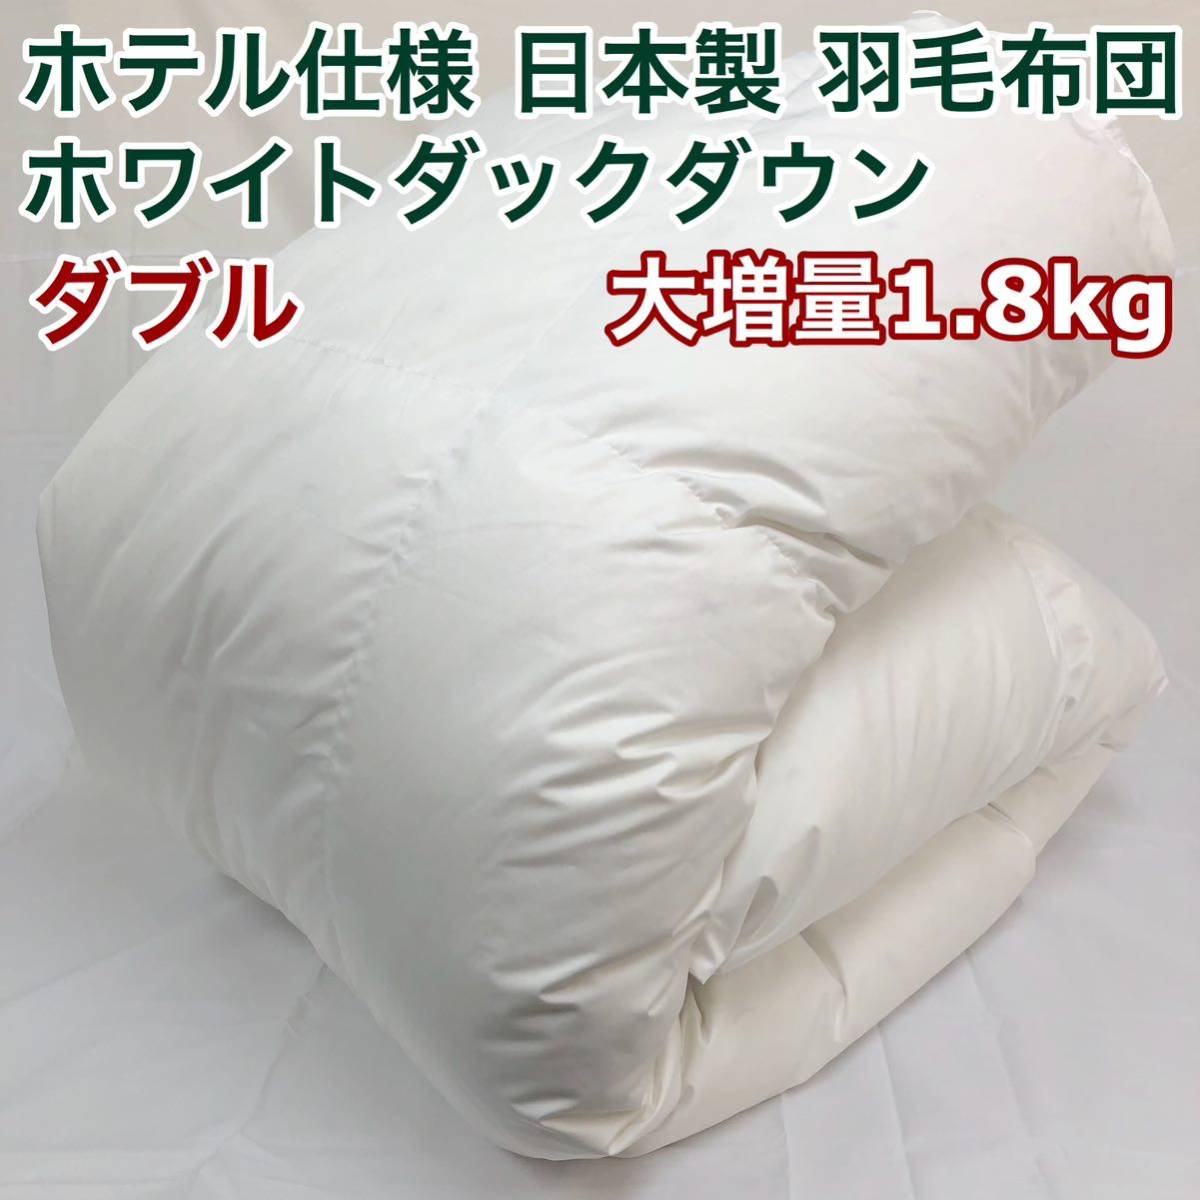 羽毛布団 ダブル 大増量 ニューゴールド 白色 日本製 190×210cm_画像1